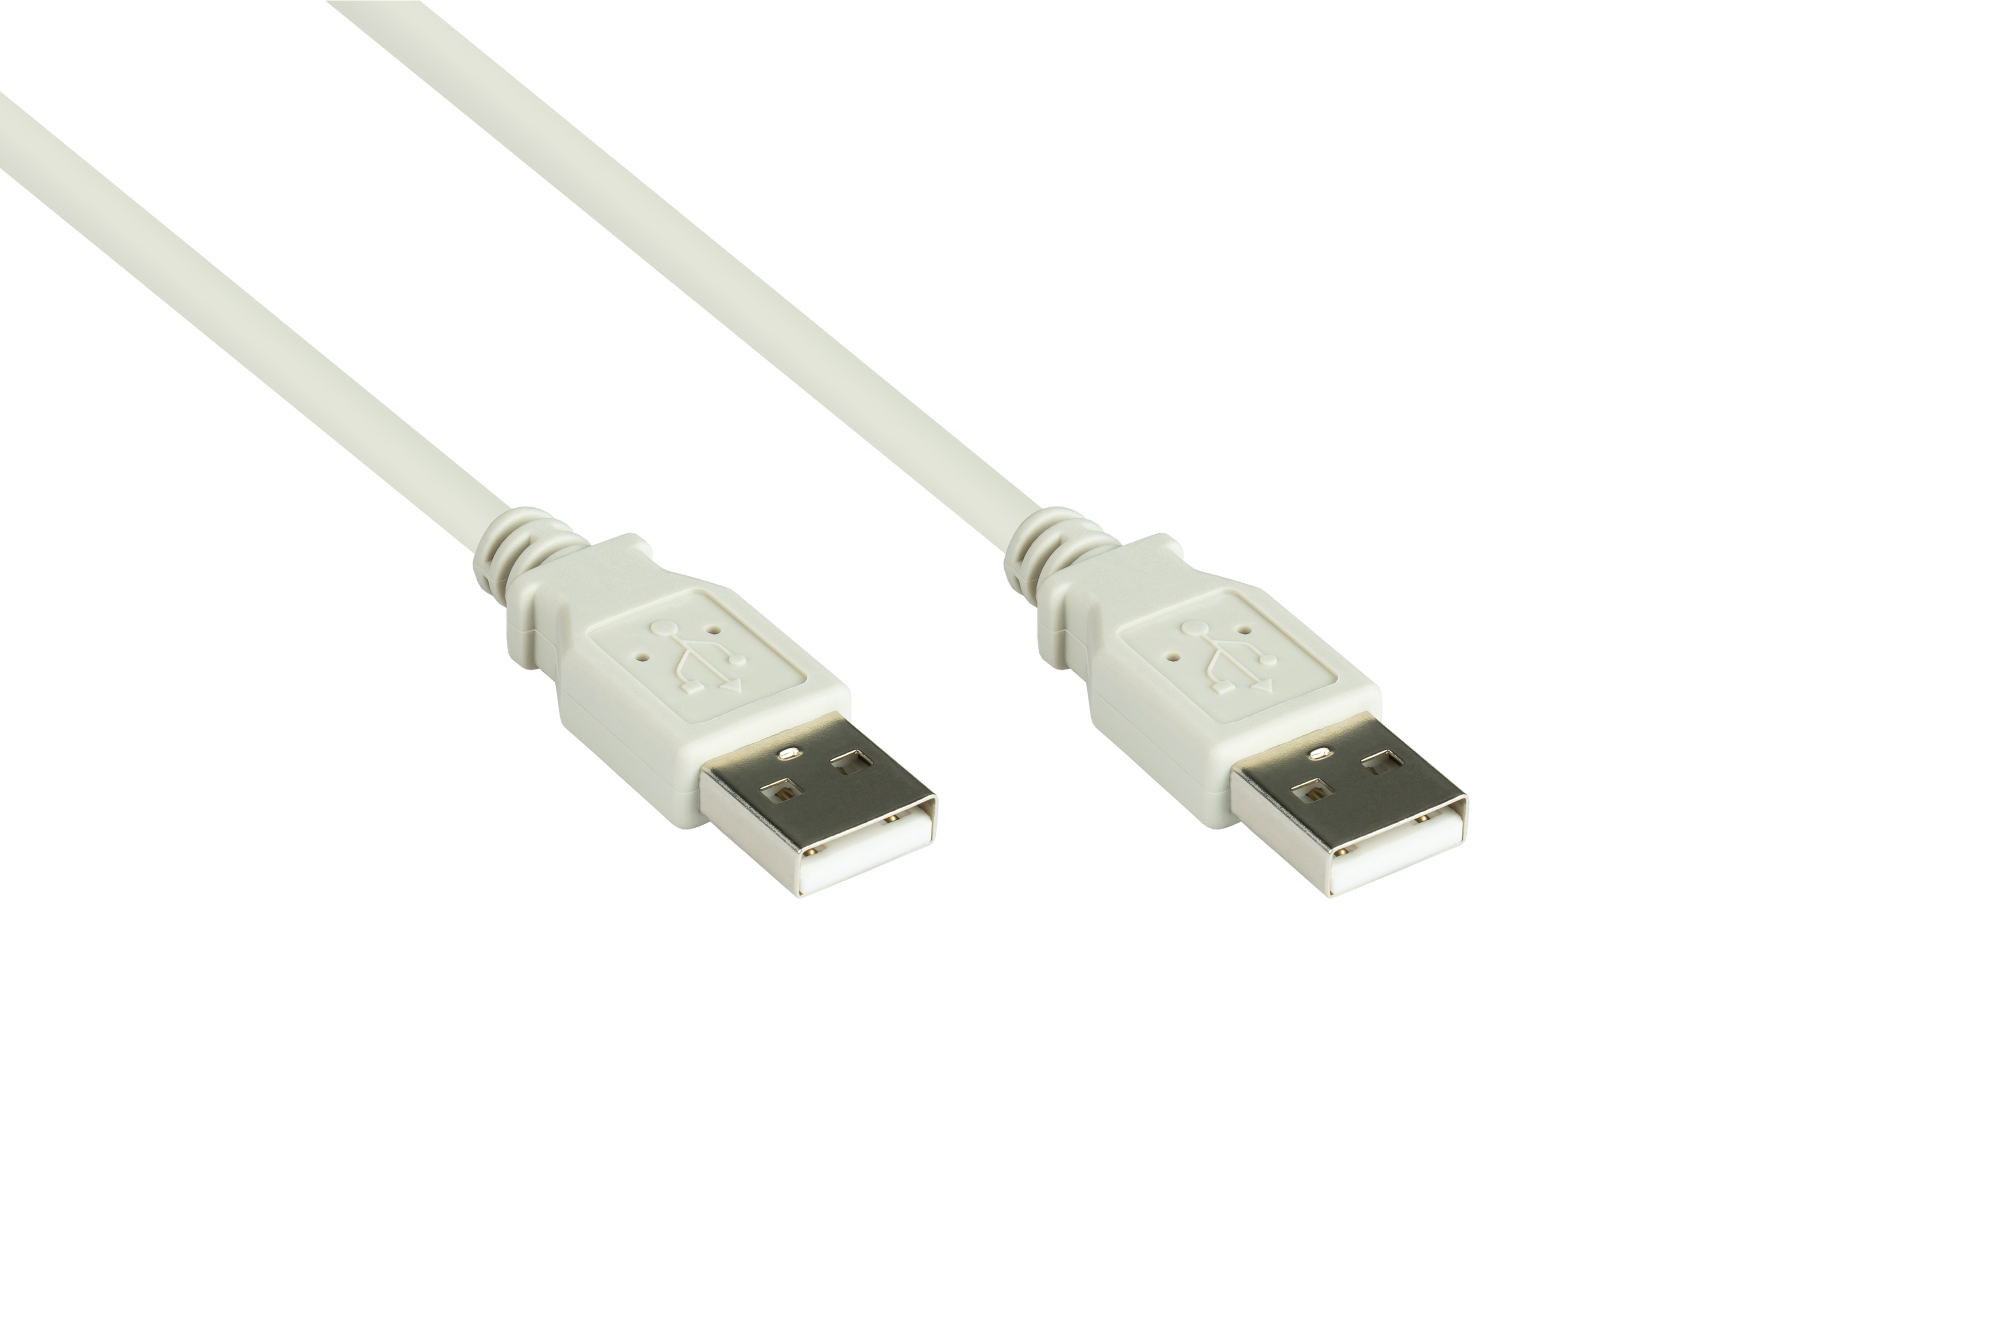 Anschlusskabel USB 2.0 Stecker A an Stecker A, grau, 1,8m, Good Connections®